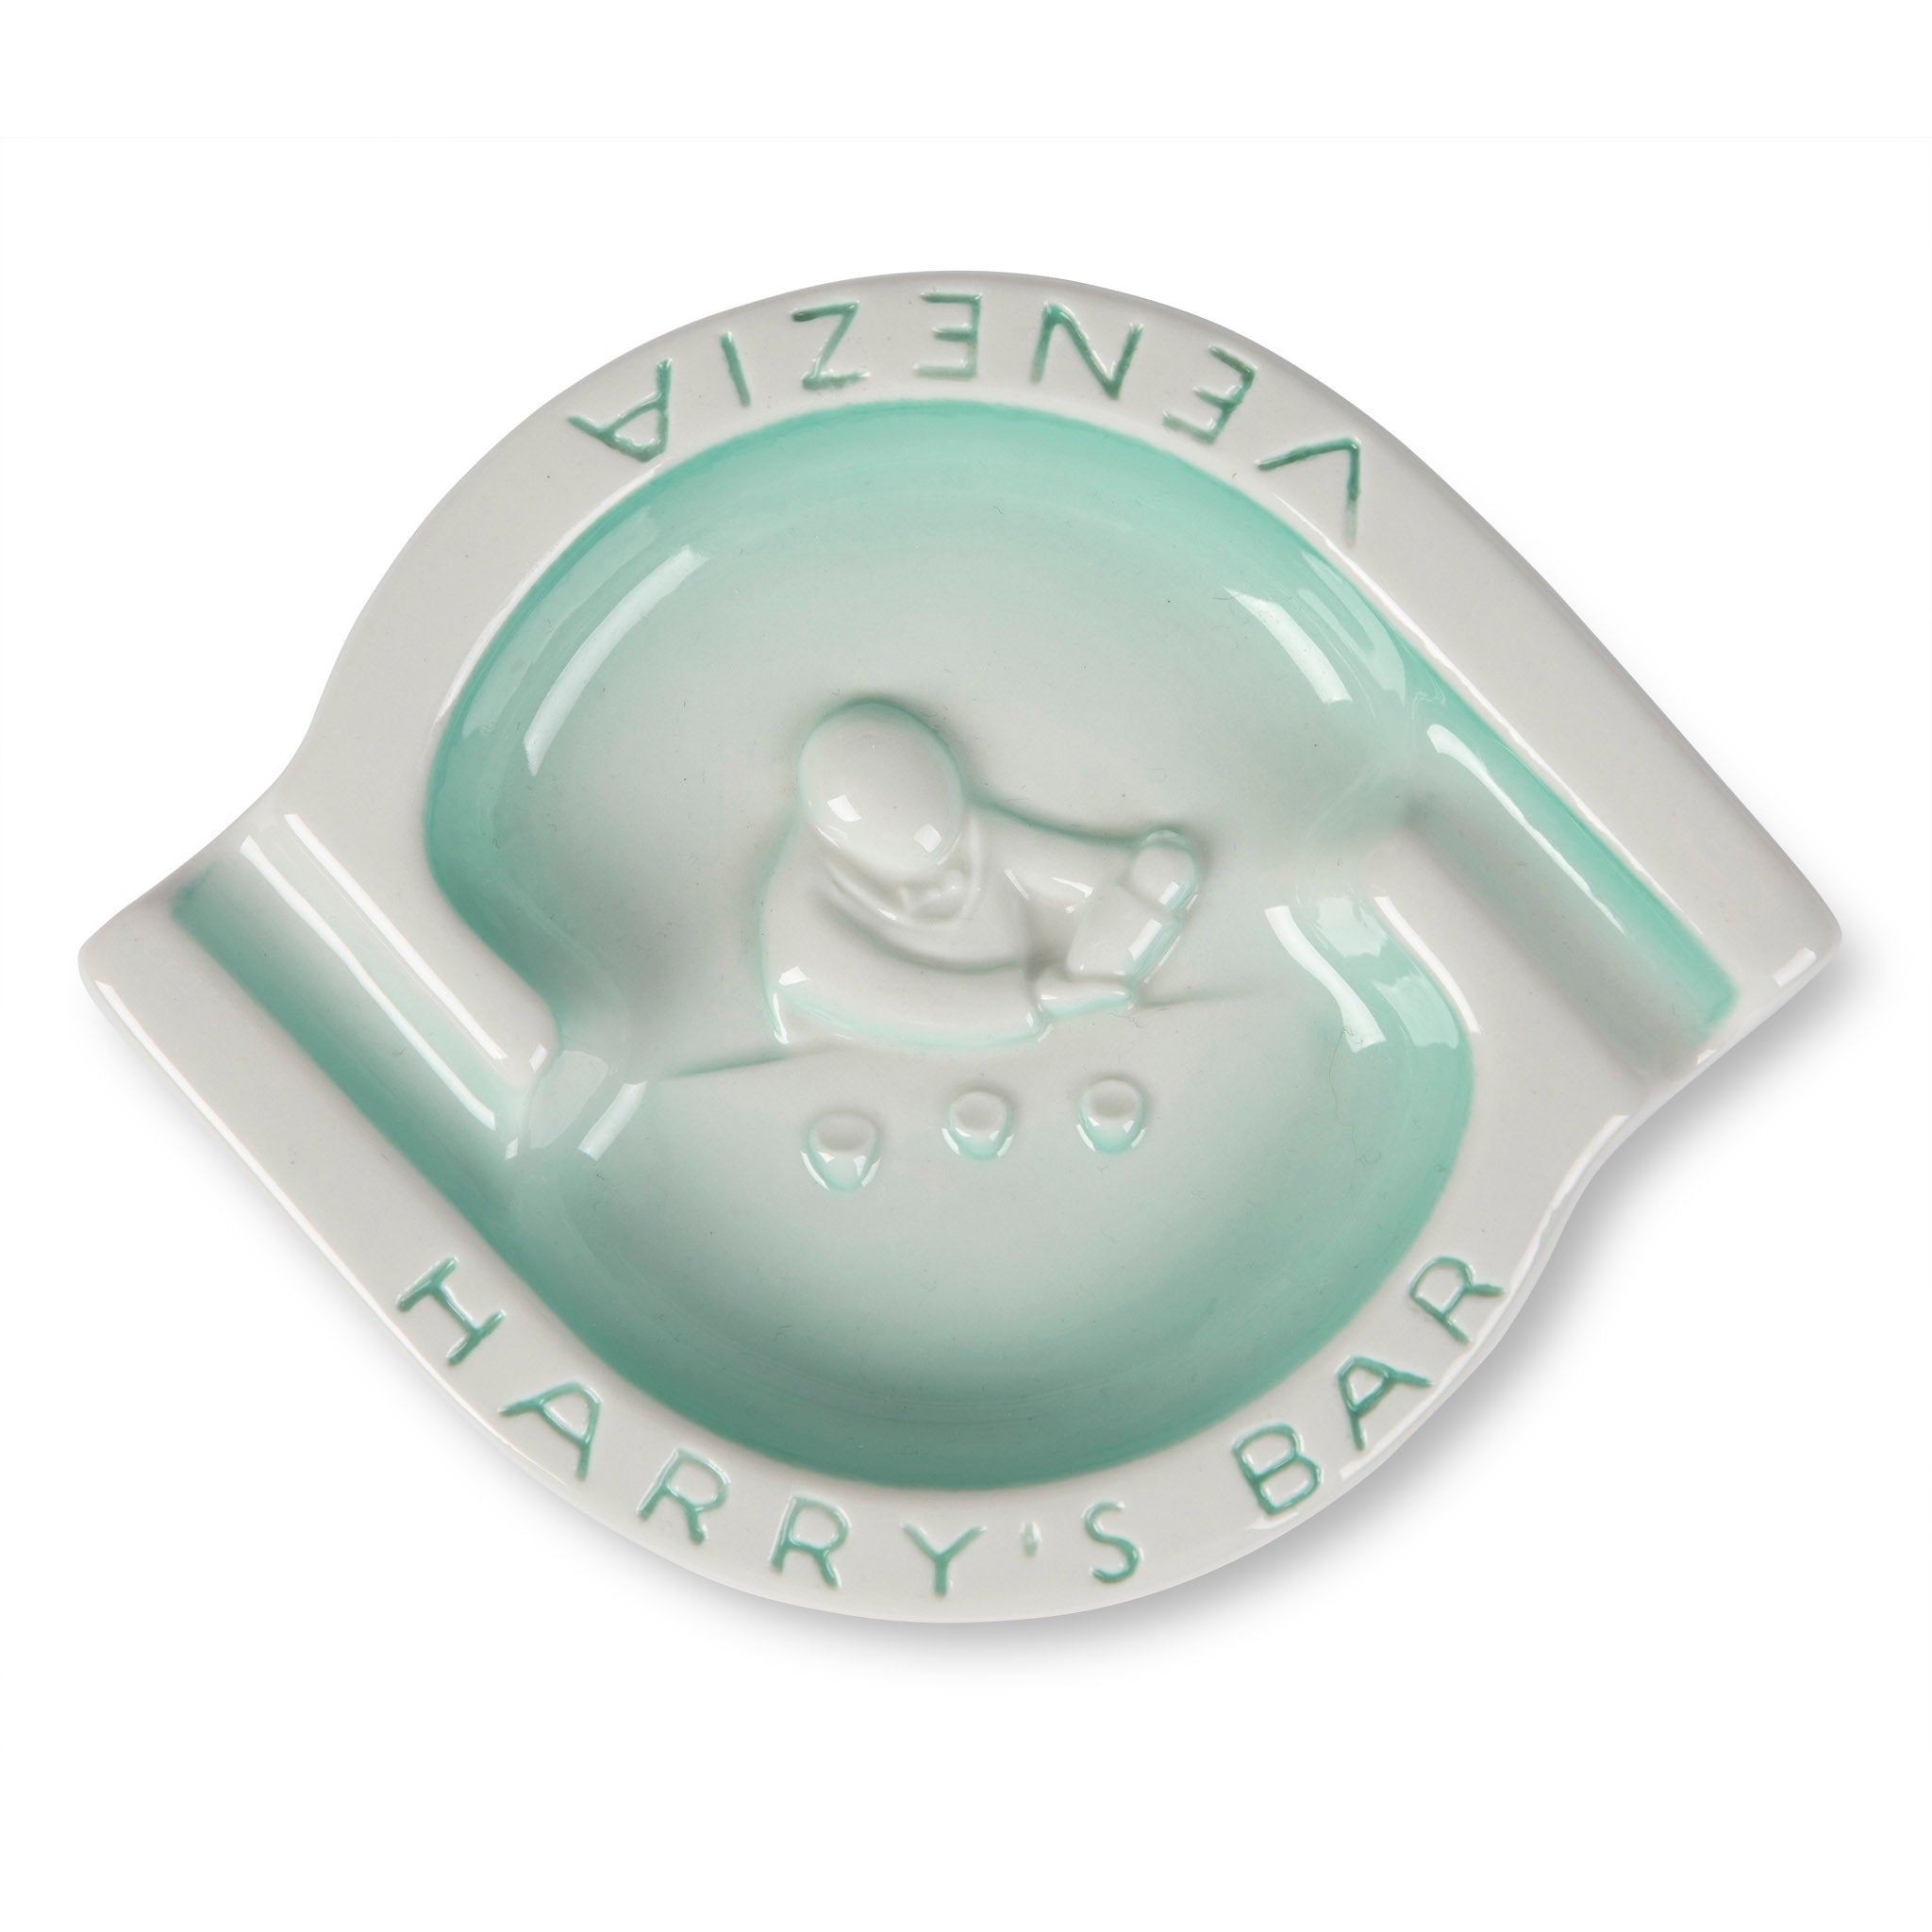 Harry's Bar Venice Italy Teal Ceramic Ashtray